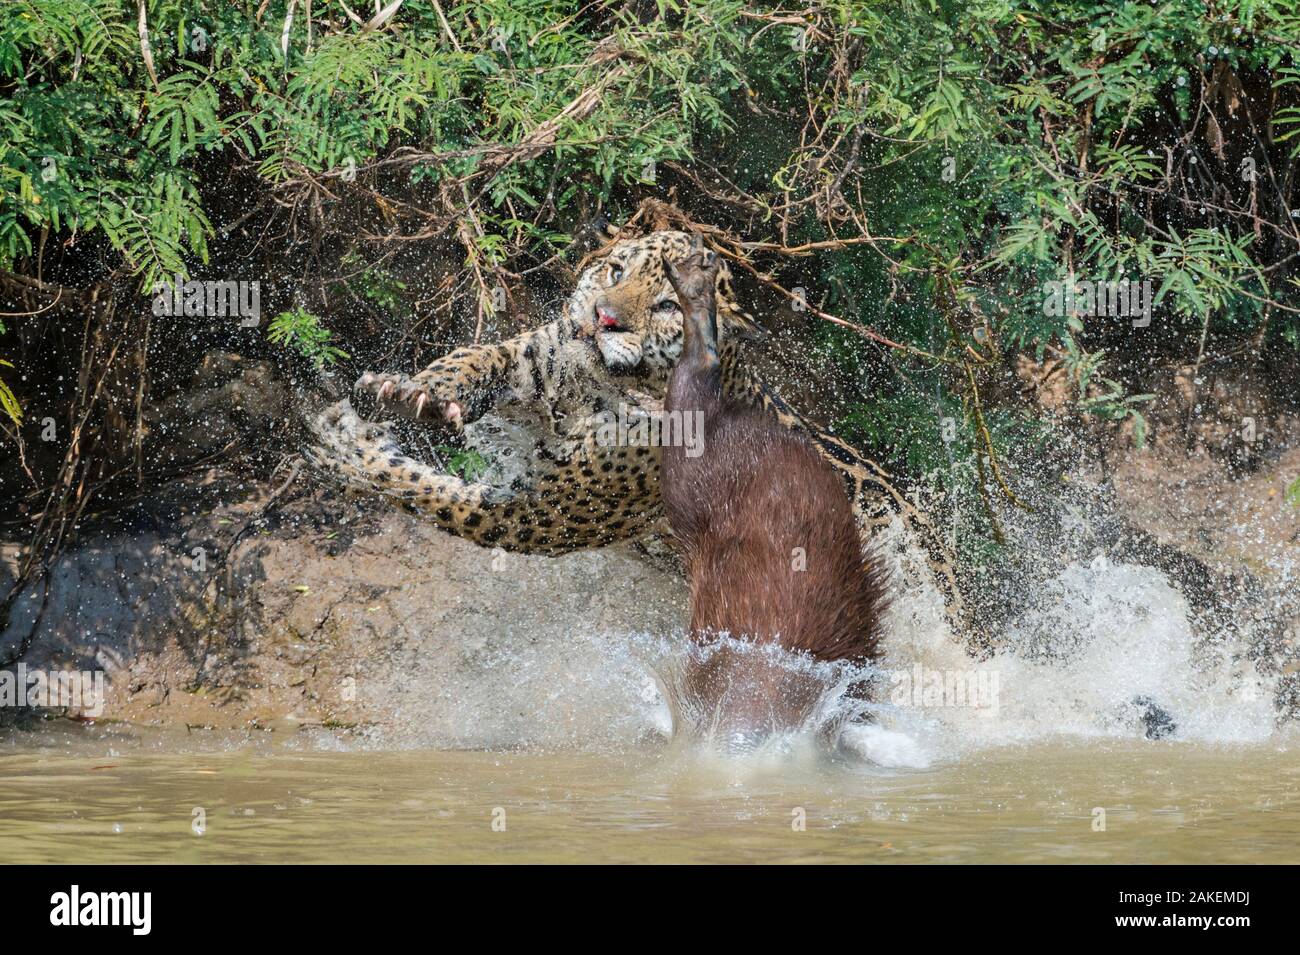 Jaguar (Panthera onca) männlich, Jagd Capybara (Hydrochoerus hydrochaeris). Das wasserschwein Proof-ansicht hat die Nase des Jaguar mit seiner Zehennagel schneiden. Cuiaba Fluss, Pantanal Matogrossense Nationalpark, Pantanal, Brasilien. Sequenz 3 von 3 Stockfoto